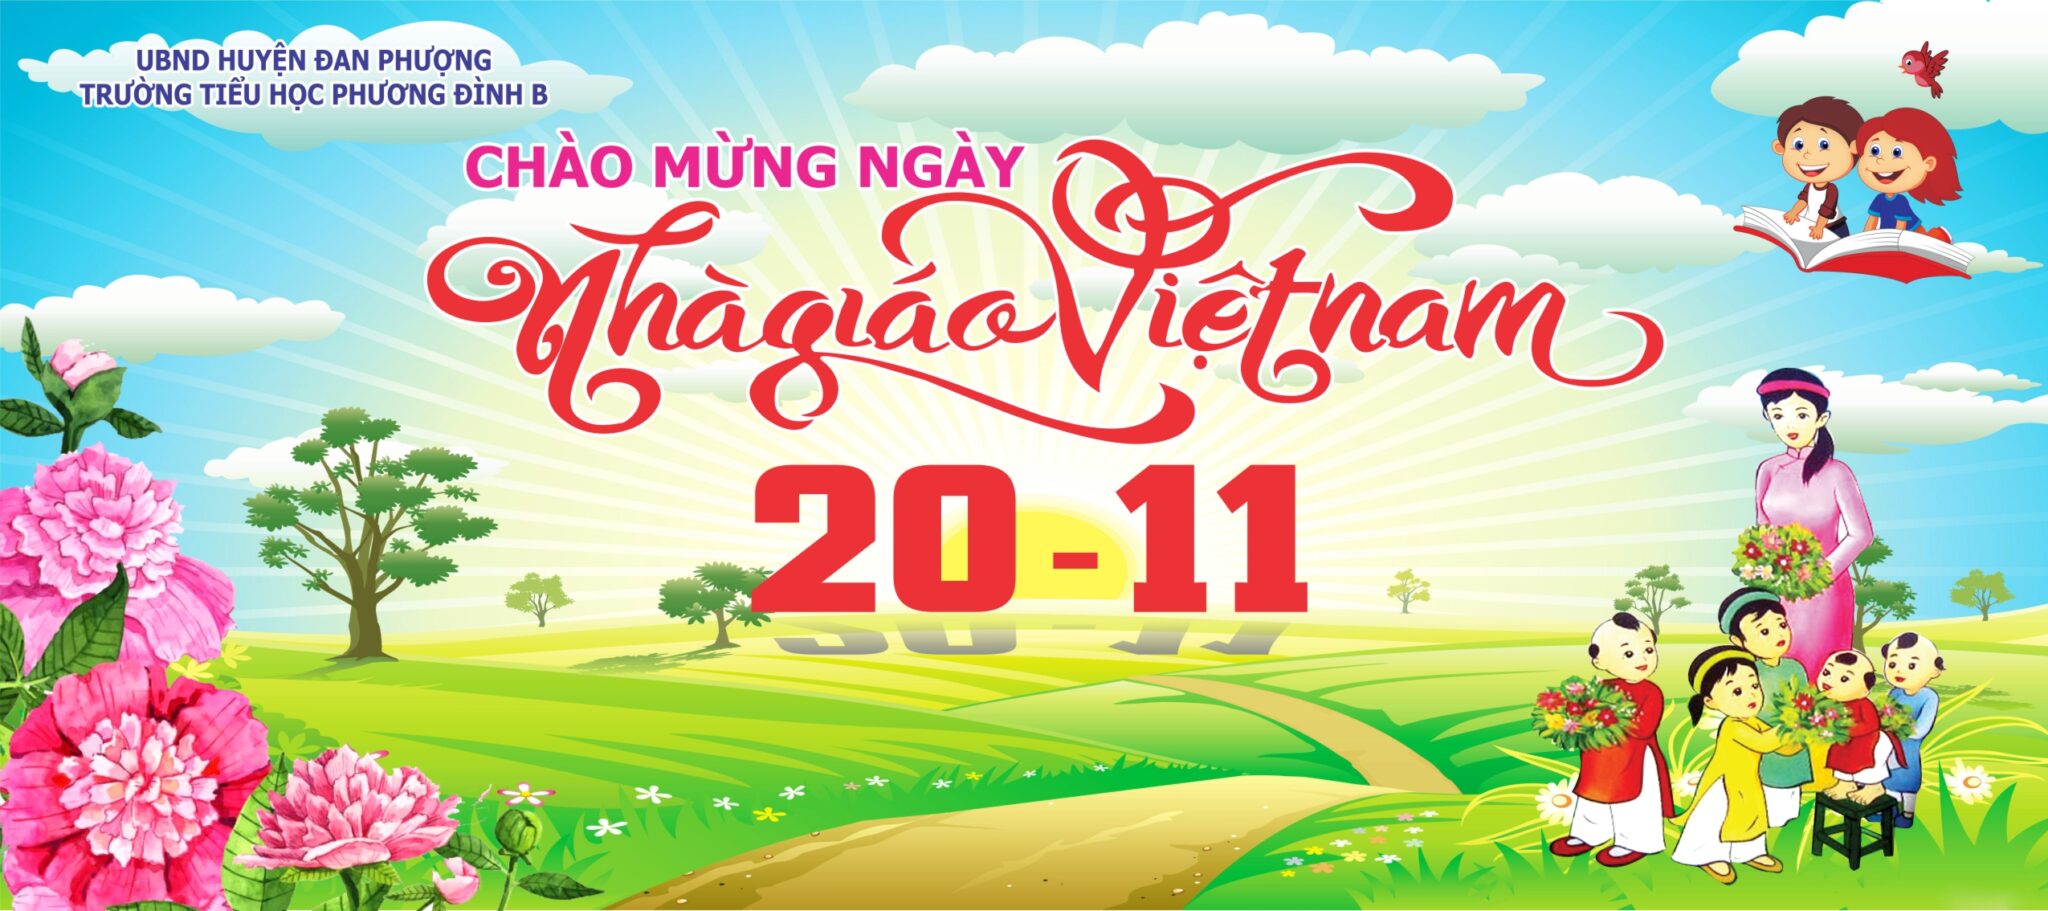 File thiết kế phông chào mừng kỉ niệm ngày nhà giáo Việt Nam 20 - 11 ...